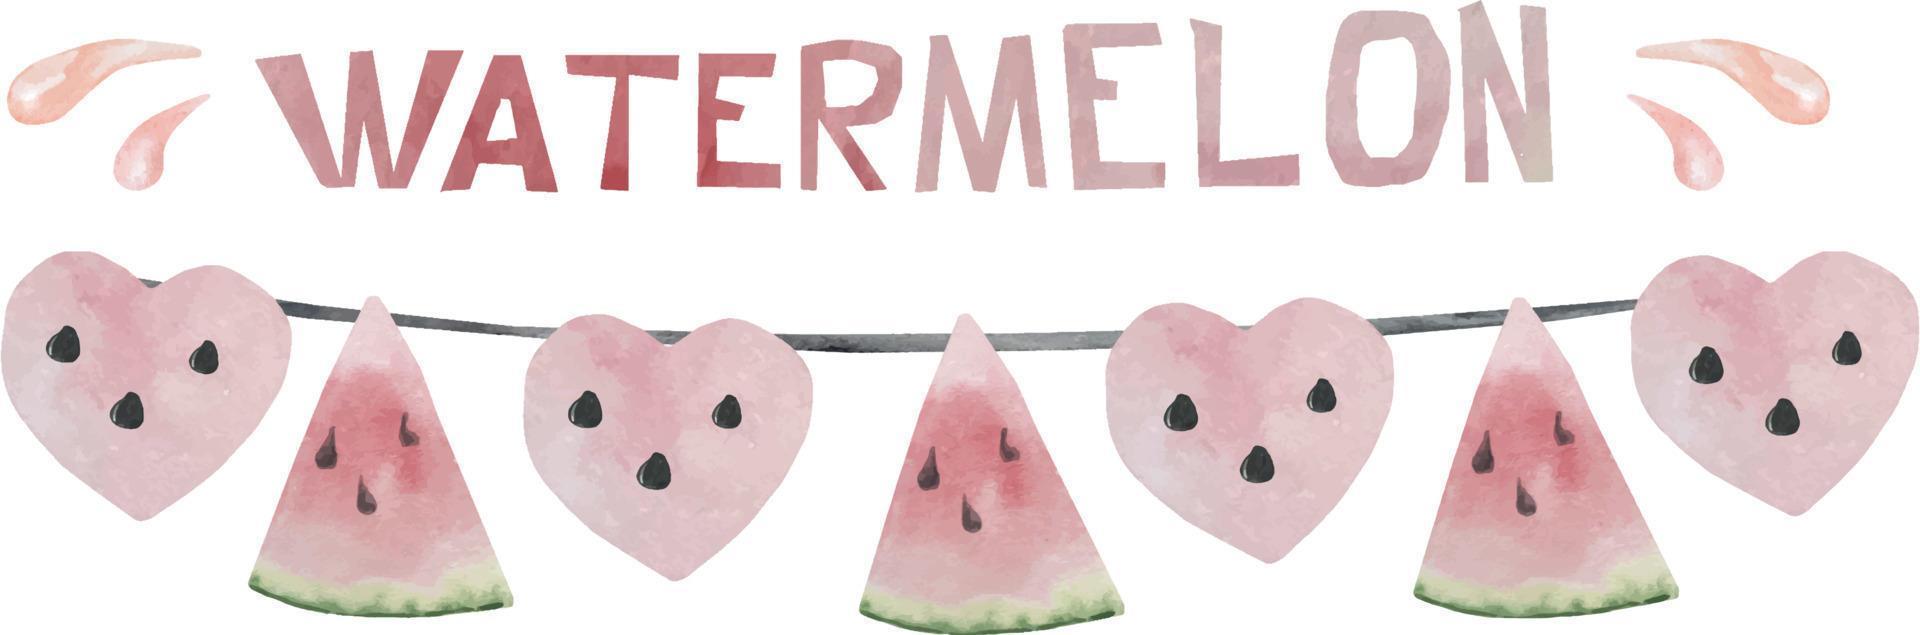 aquarel watermeloen gorzen met roze harten en watermeloen stukjes. zomervlaggen aan een touwtje. slinger van watermeloen vector